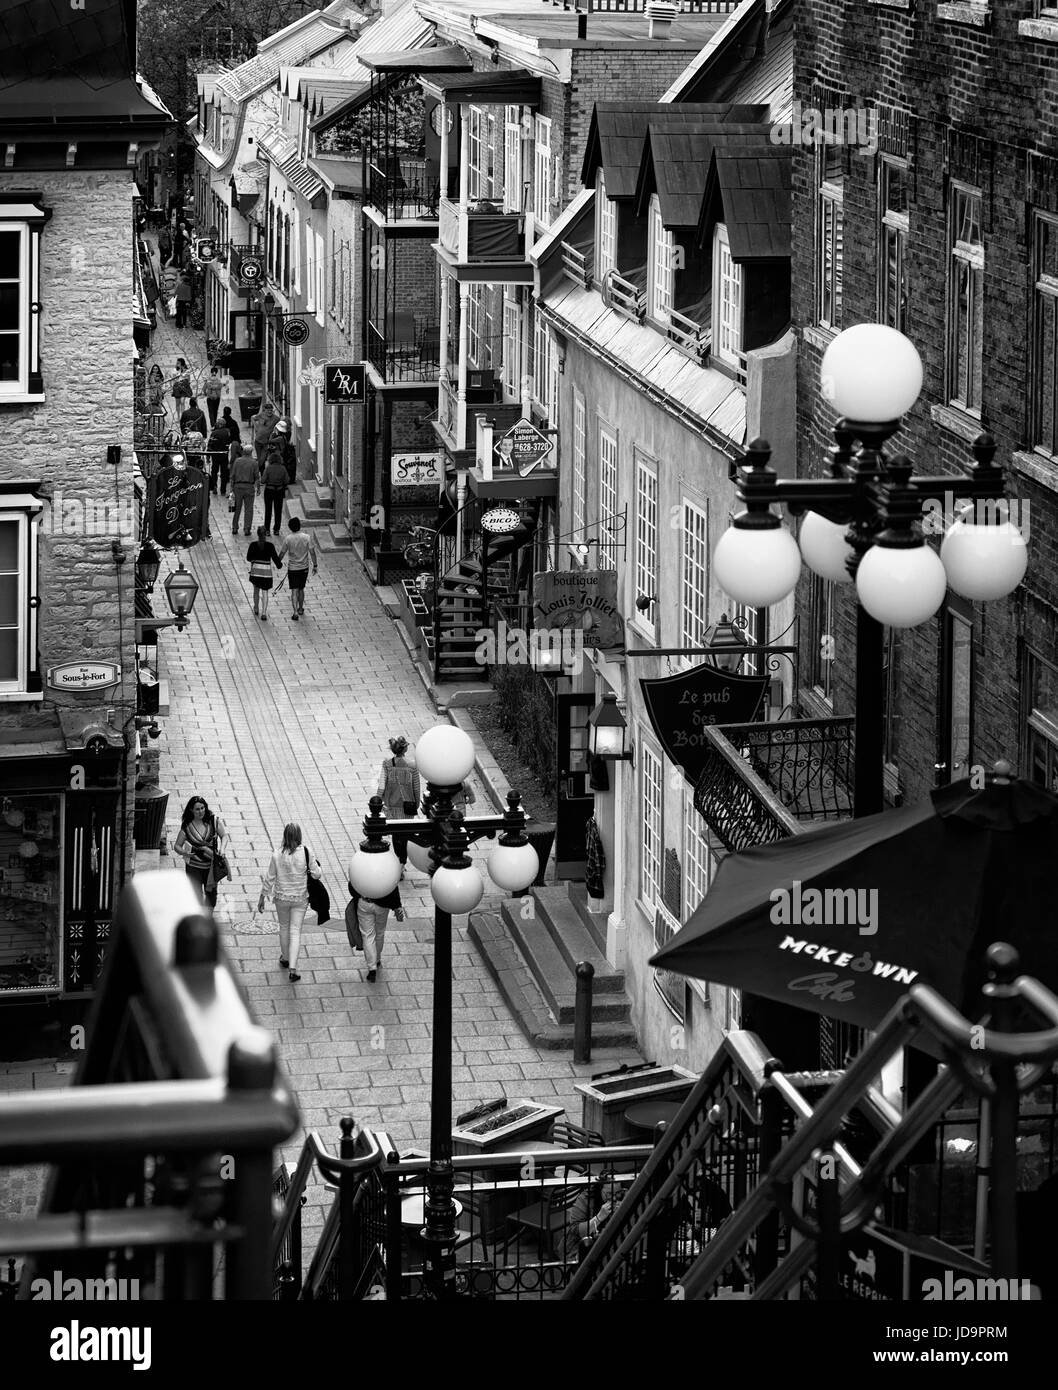 La gente che camminava nelle strade storiche Rue du Petit Champlain e Rue Sous Le Fort della vecchia Quebec City in serata, vista da sopra. Quebec, Canada. Bla Foto Stock